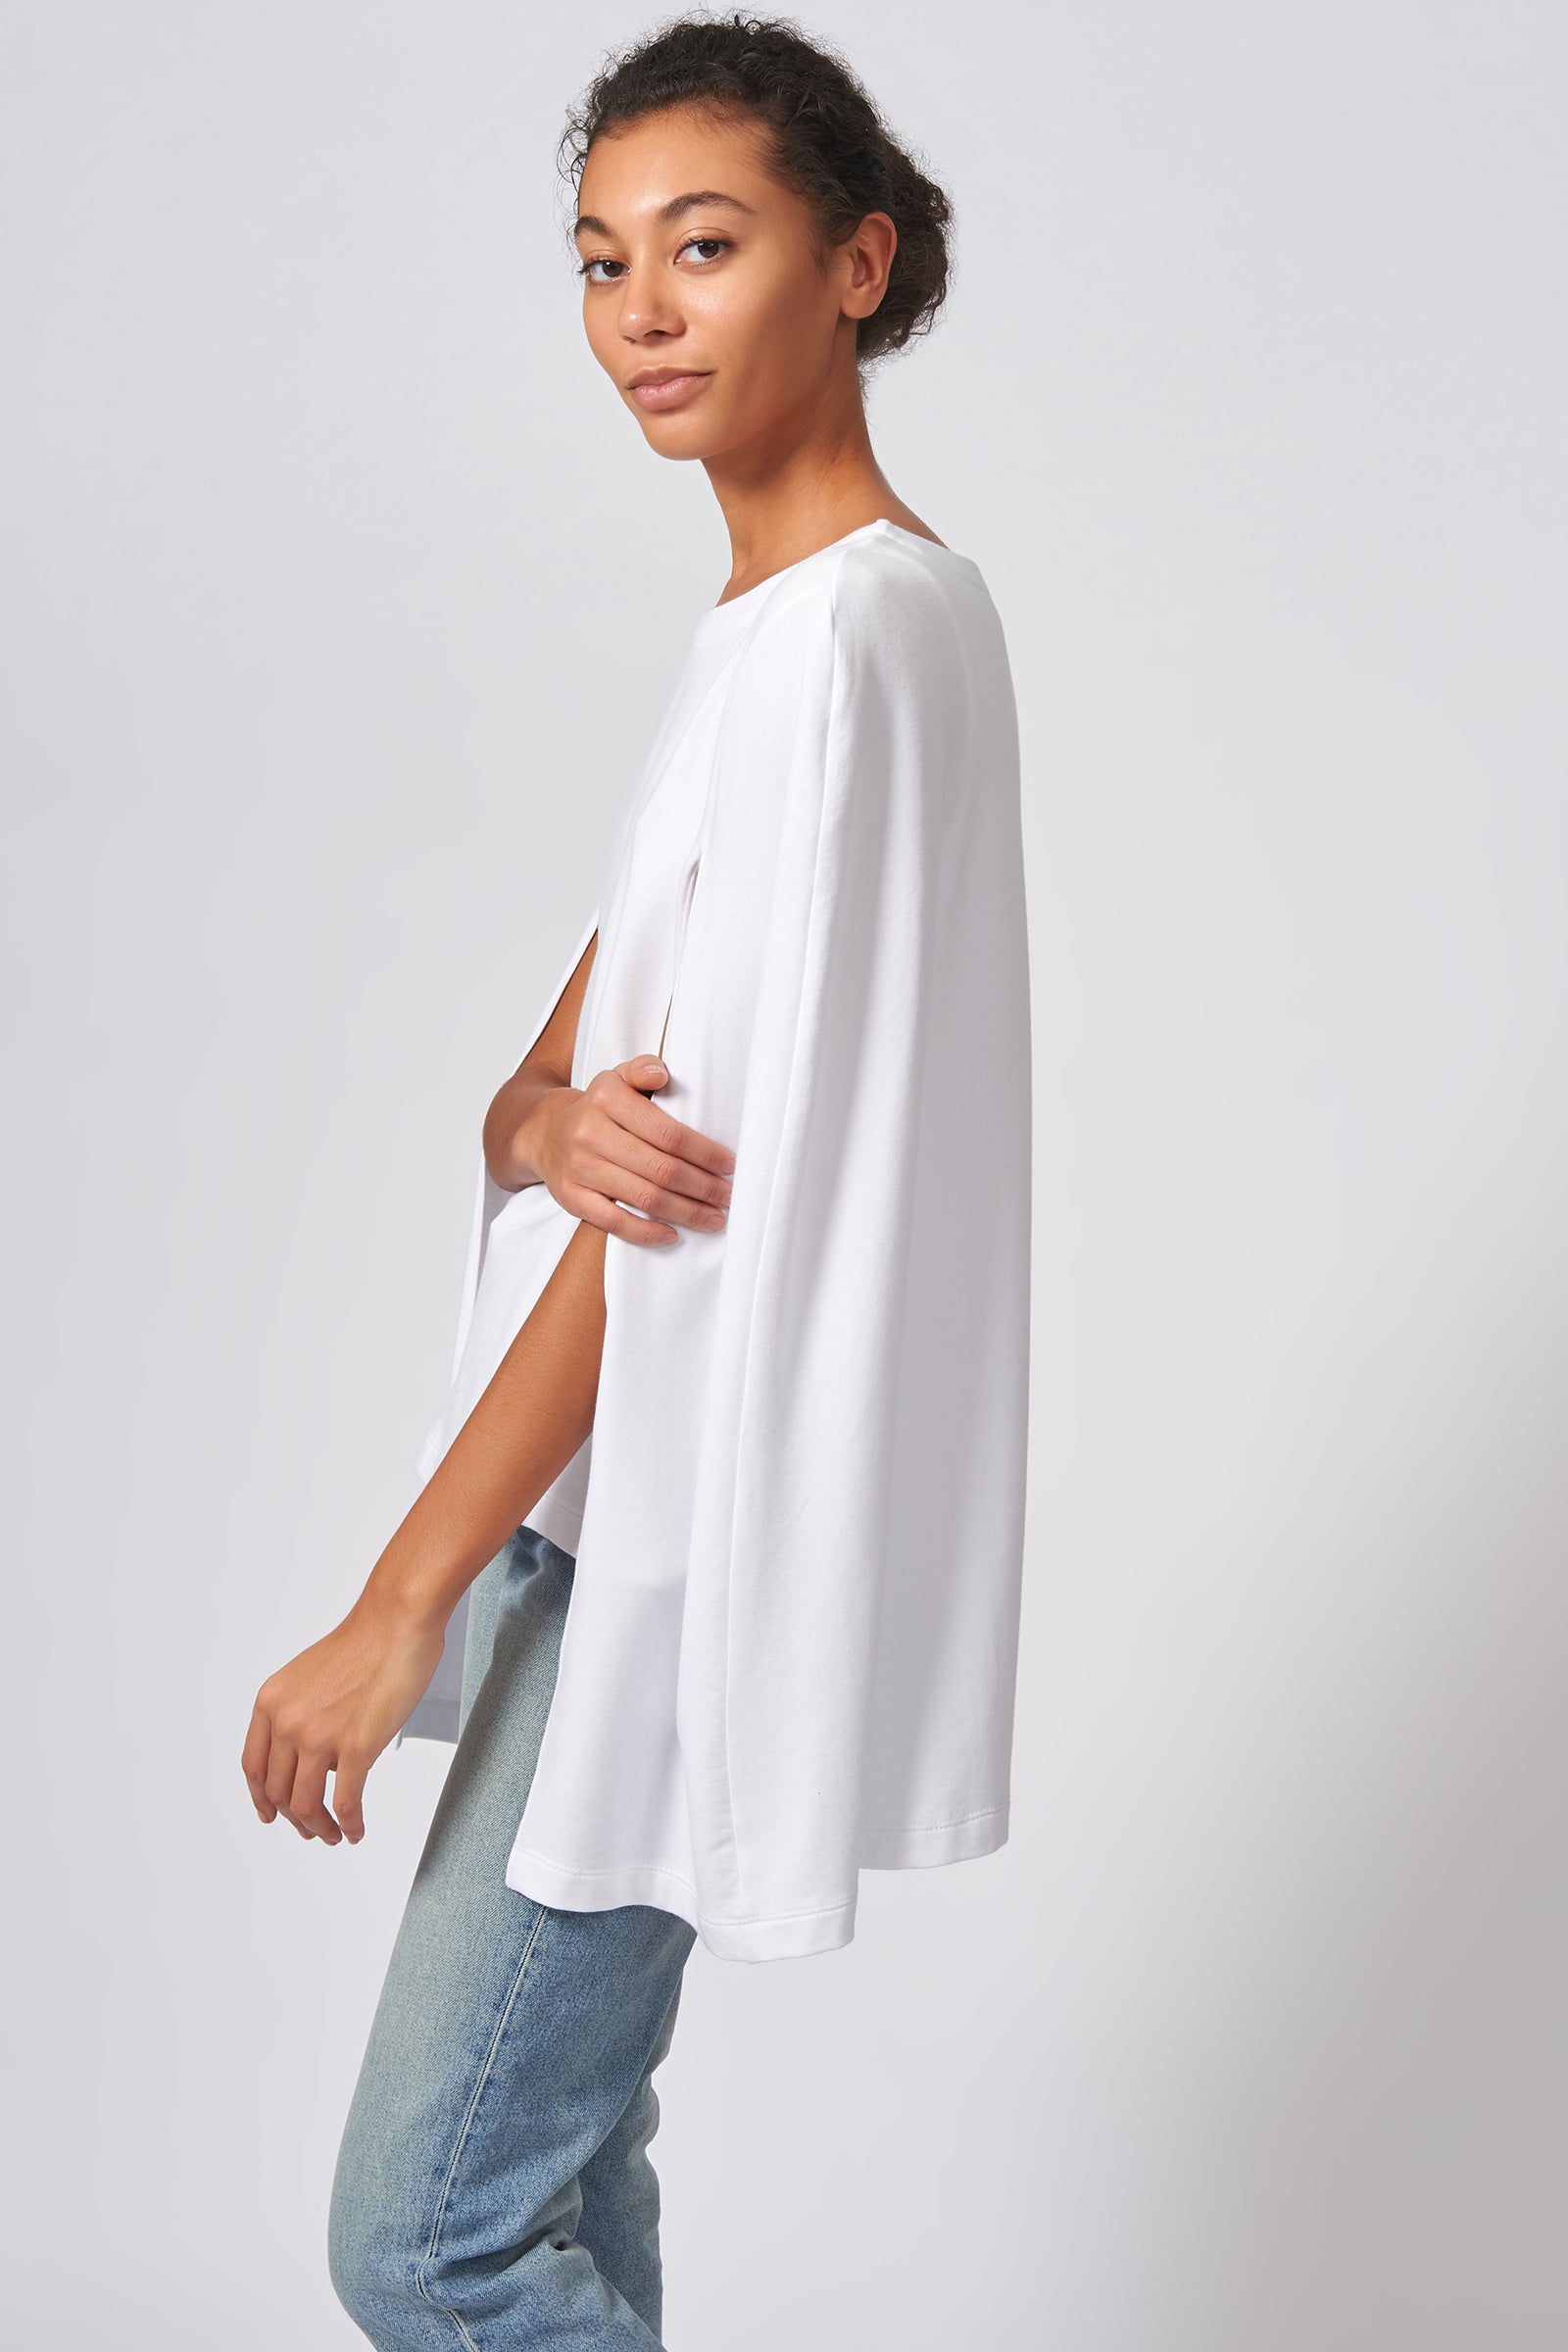 Kal Rieman Cape Sweatshirt in White on Model Side View